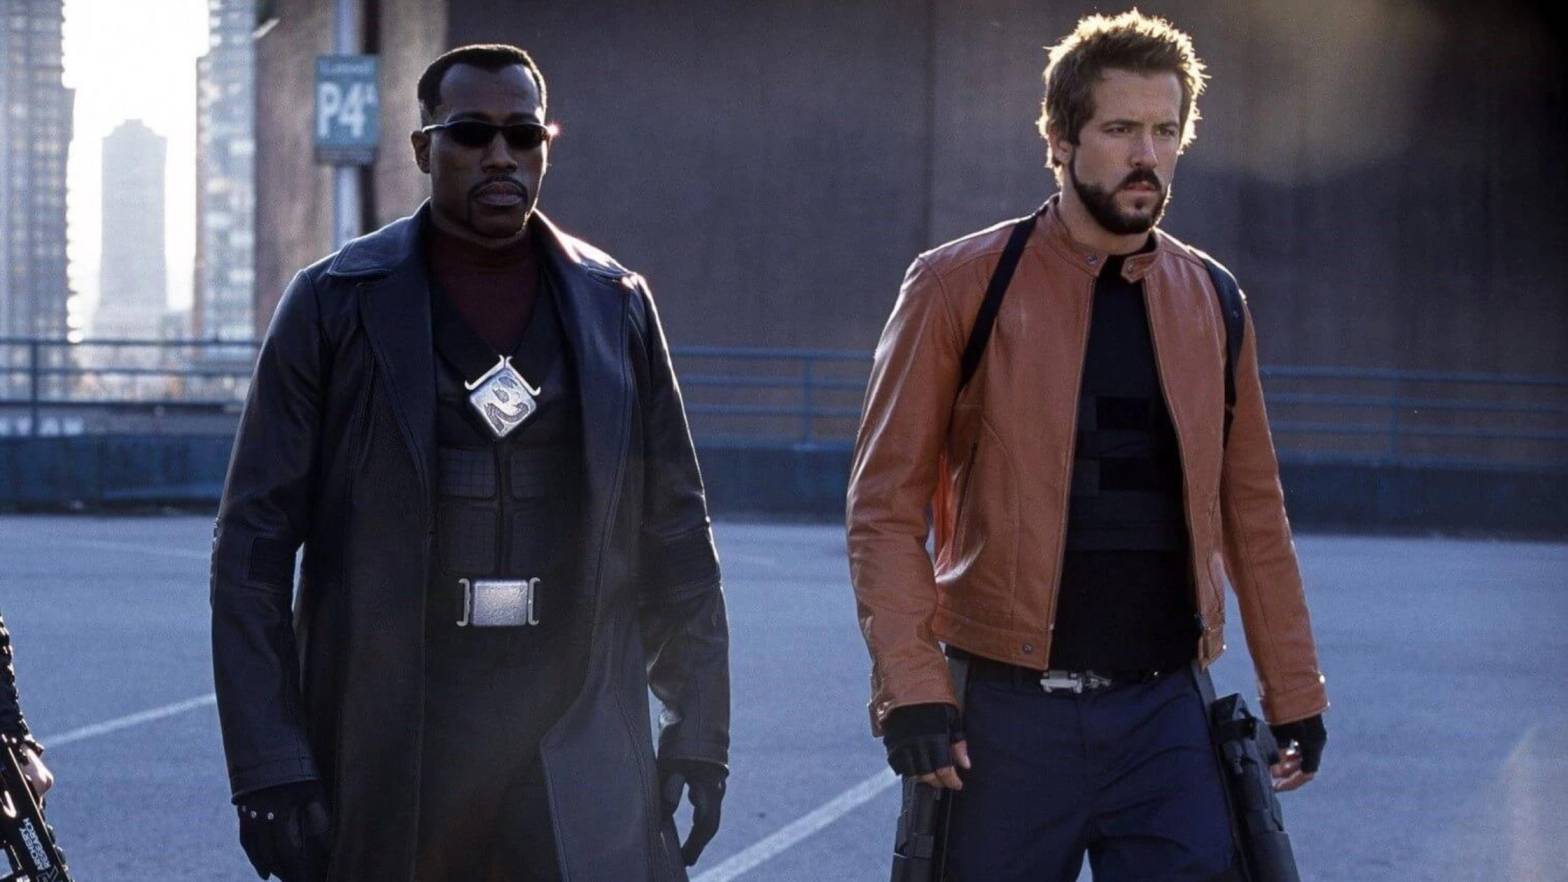 Wesley Snipes Intimidates Ryan Reynolds on “Blade: Trinity” Set, Sparking Memories of Intense Method Acting